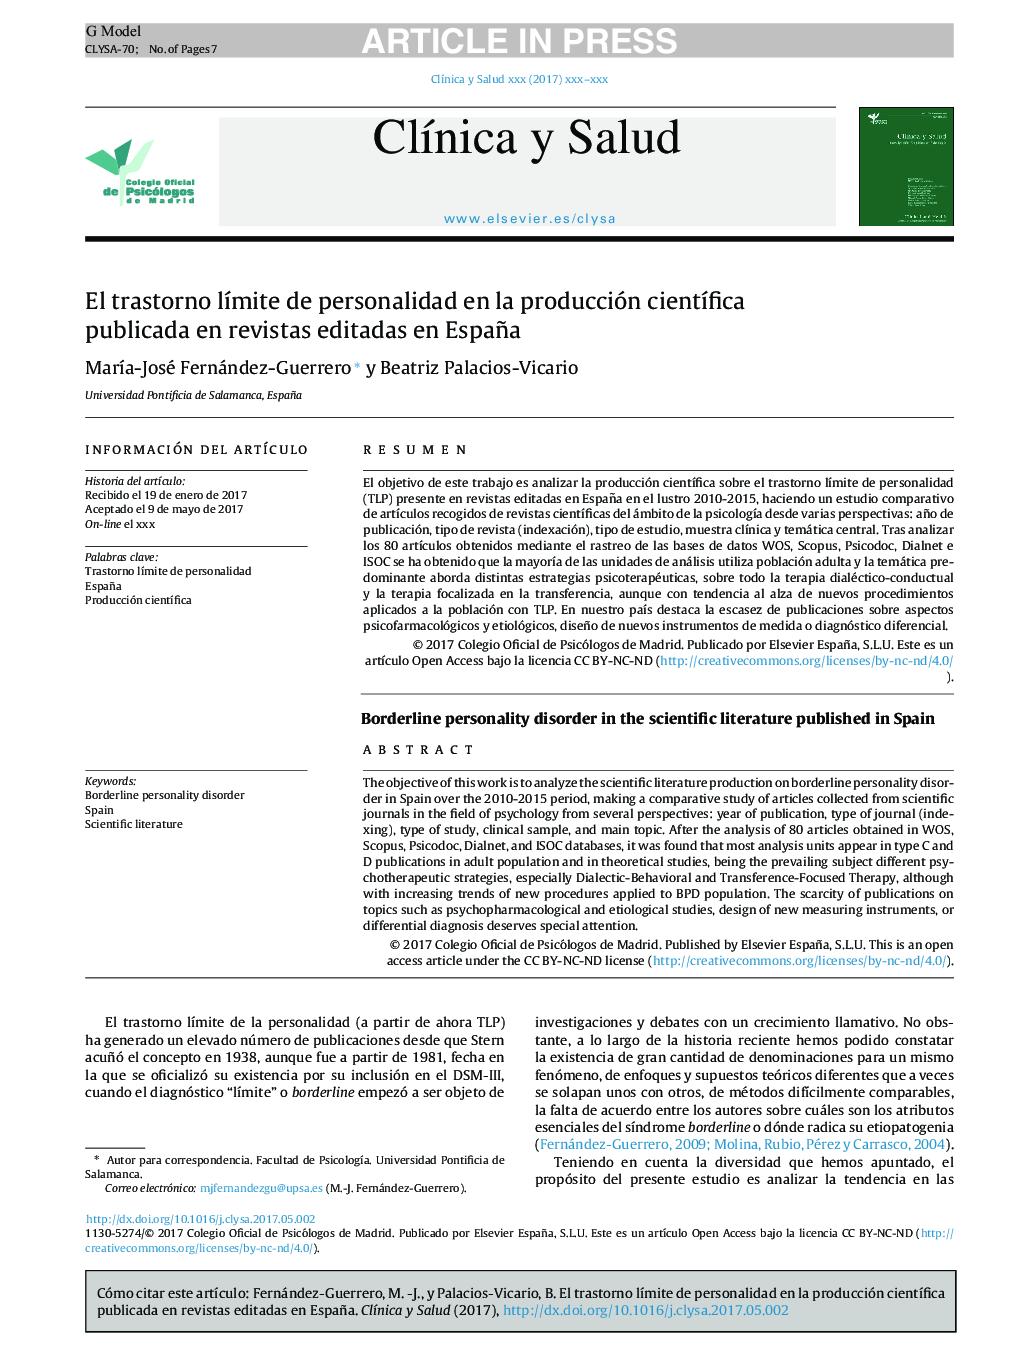 El trastorno lÃ­mite de personalidad en la producción cientÃ­fica publicada en revistas editadas en España